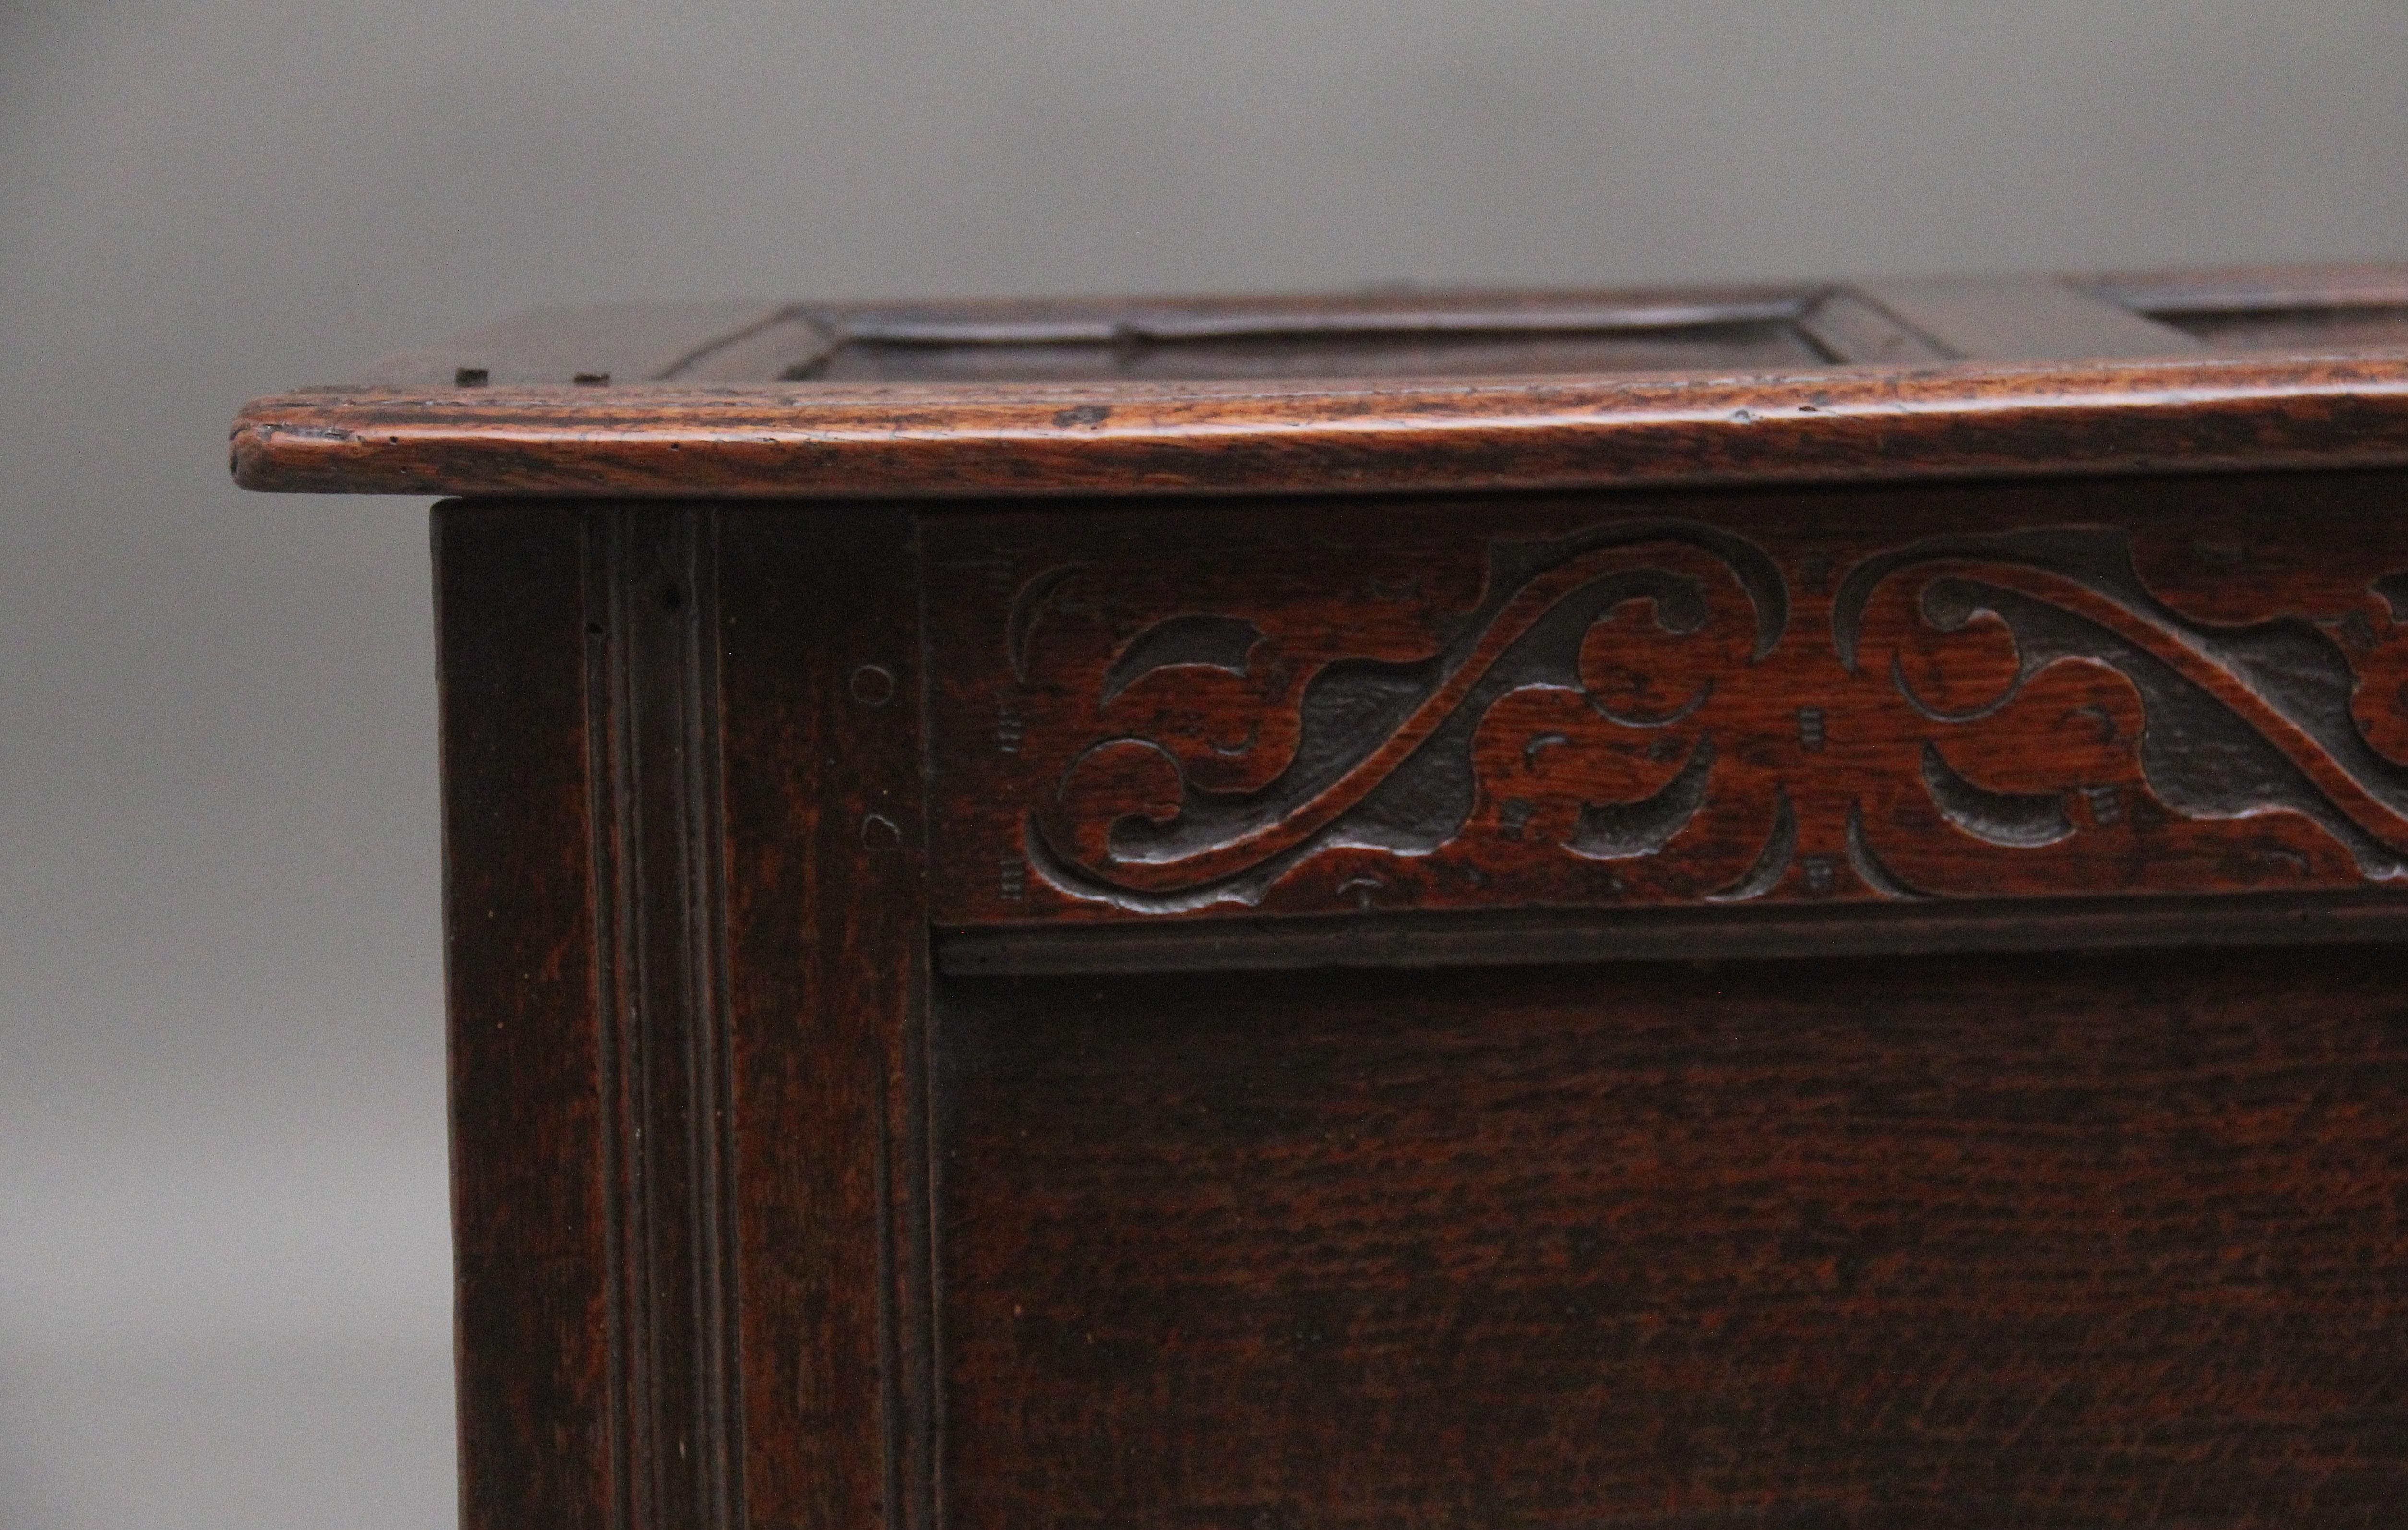 Eichenholzkassette aus dem 18. Jahrhundert, deren dreifach getäfelter Deckel mit Scharnieren geöffnet werden kann, um ein großes Fach freizugeben. Die zweifach getäfelte Vorderseite hat wunderschöne dekorative Schnitzereien, die Seiten sind getäfelt